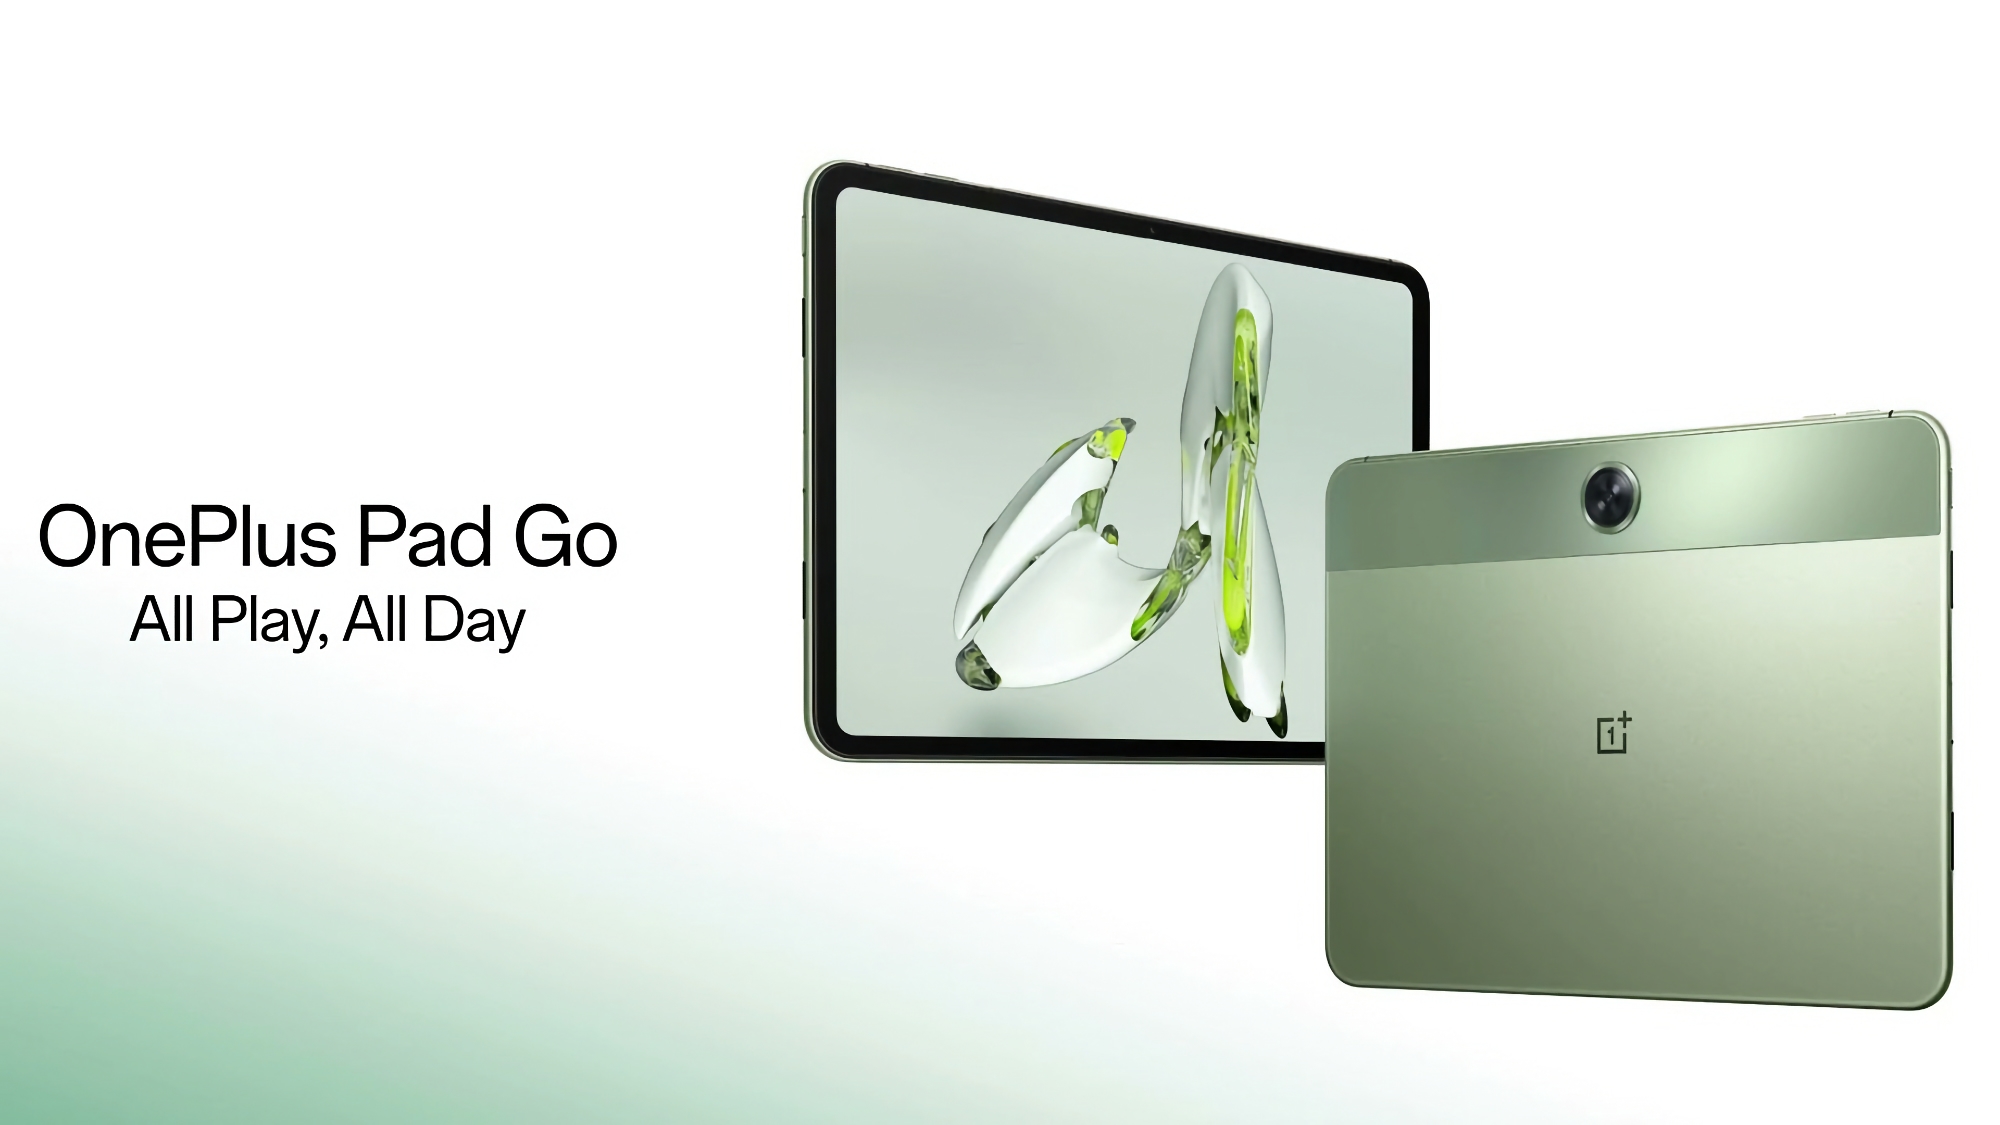 OnePlus Pad Go debuterade i Europa: en surfplatta med en 2K-skärm på 90 Hz, MediaTek Helio G99-chip, LTE och ett pris på 299 euro